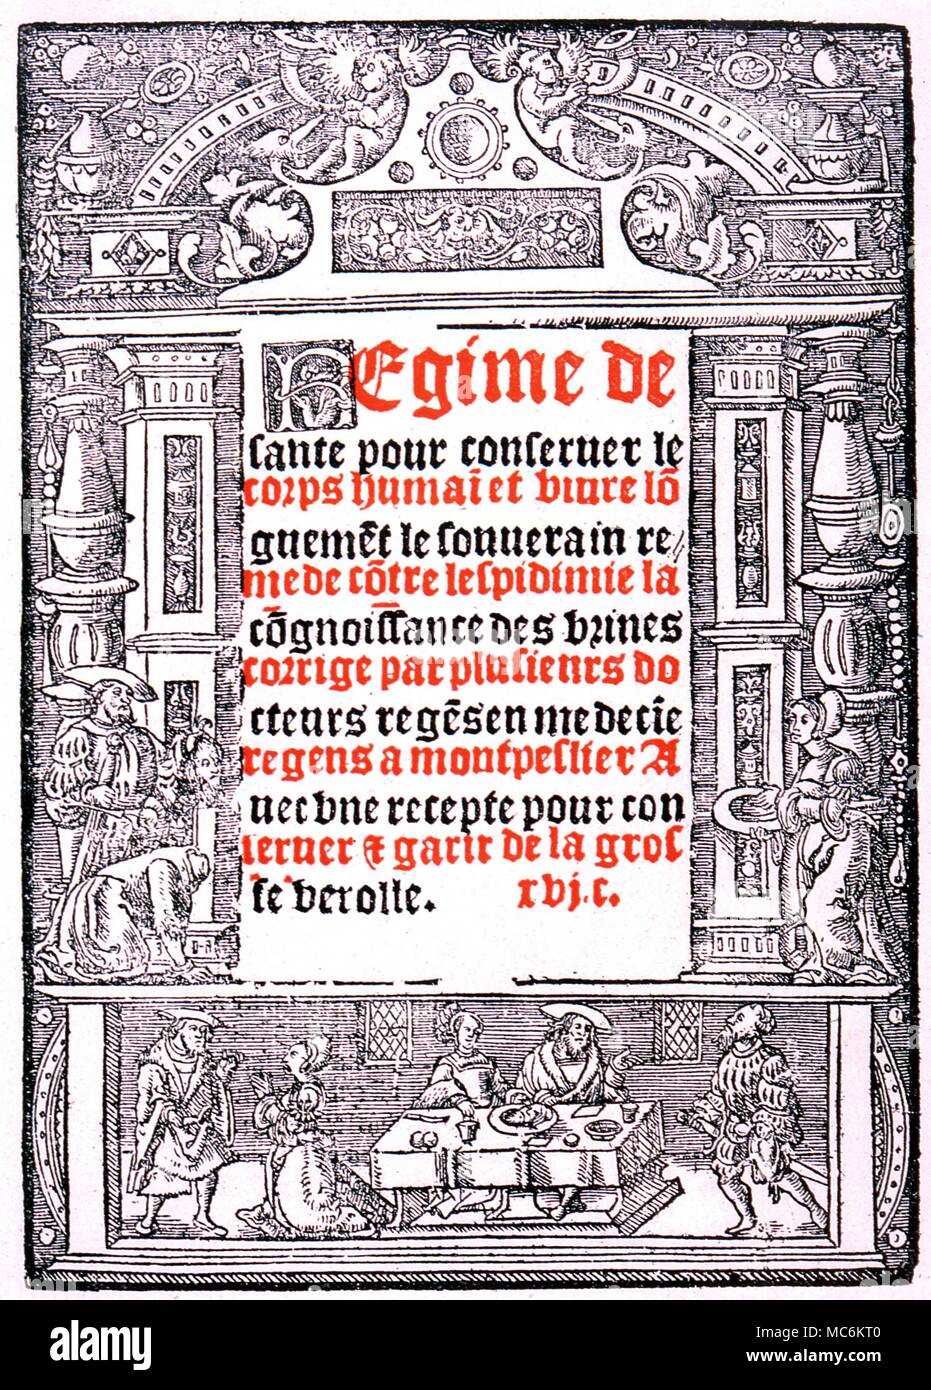 Herbal -French book on Health. Title page of Arnaldus de Villanova's 'Regime de Sante pour conserver le corps humaiet''. Paris 1532' Stock Photo